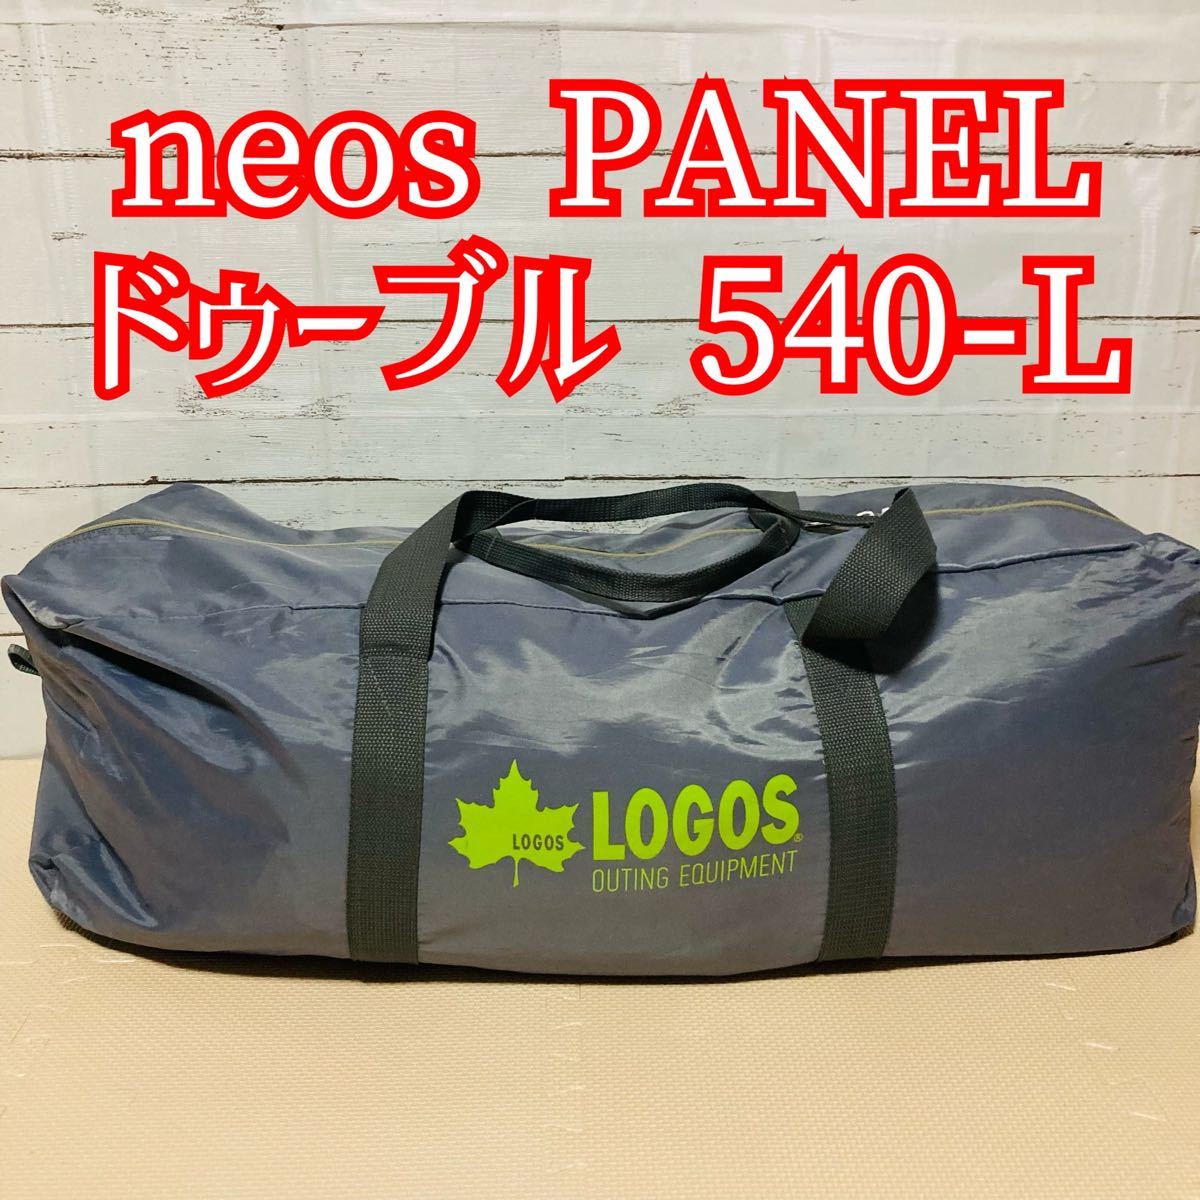 logos ロゴス neos PANEL ドゥーブル 540-L